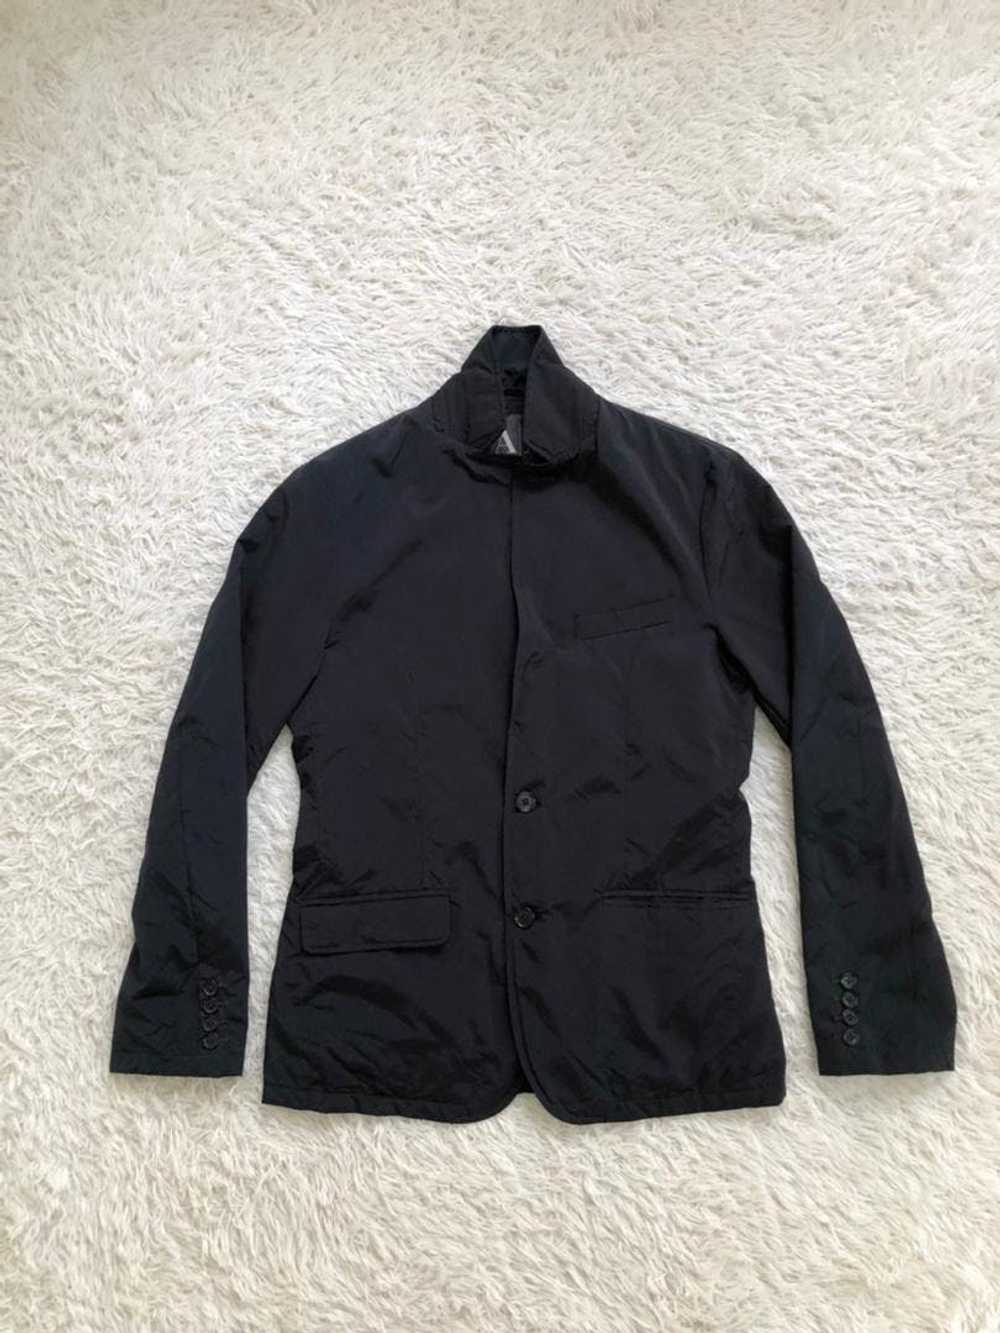 Streetwear - Armani Exchange jacket - image 10